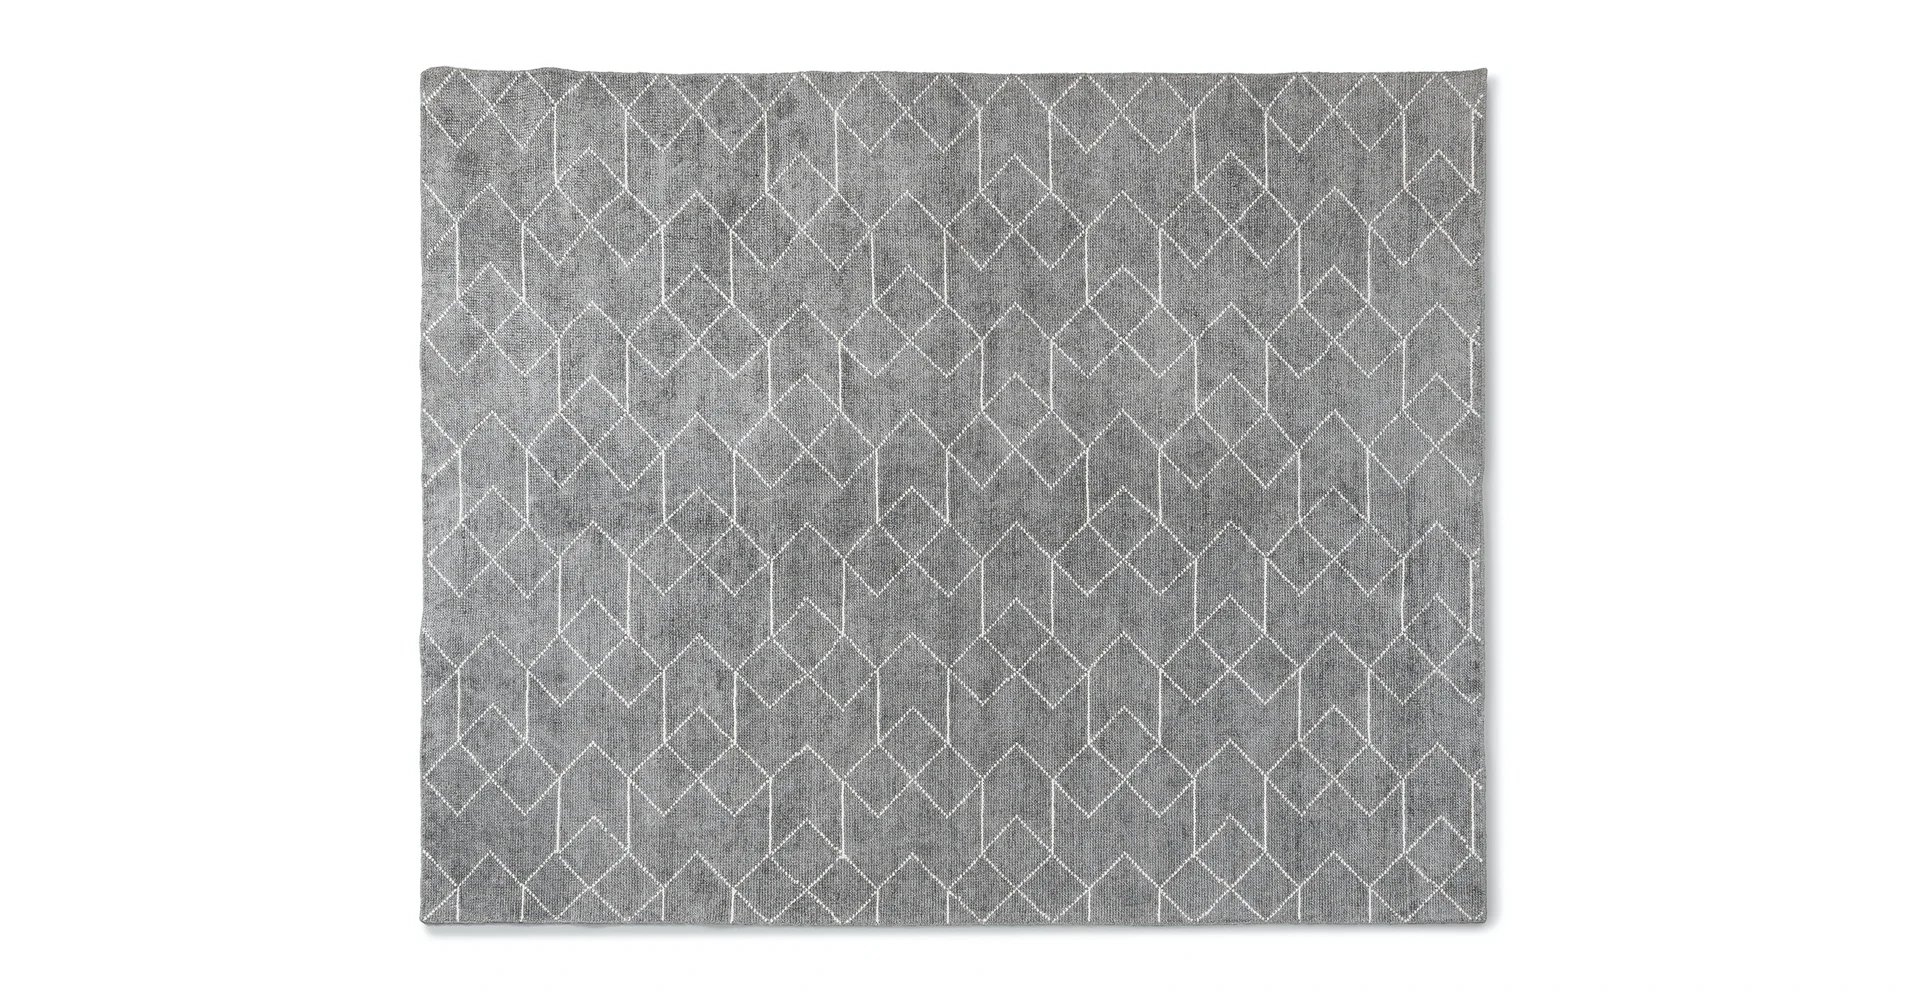 Polygon Basalt Gray / White Rug 8 x 10 - Image 0